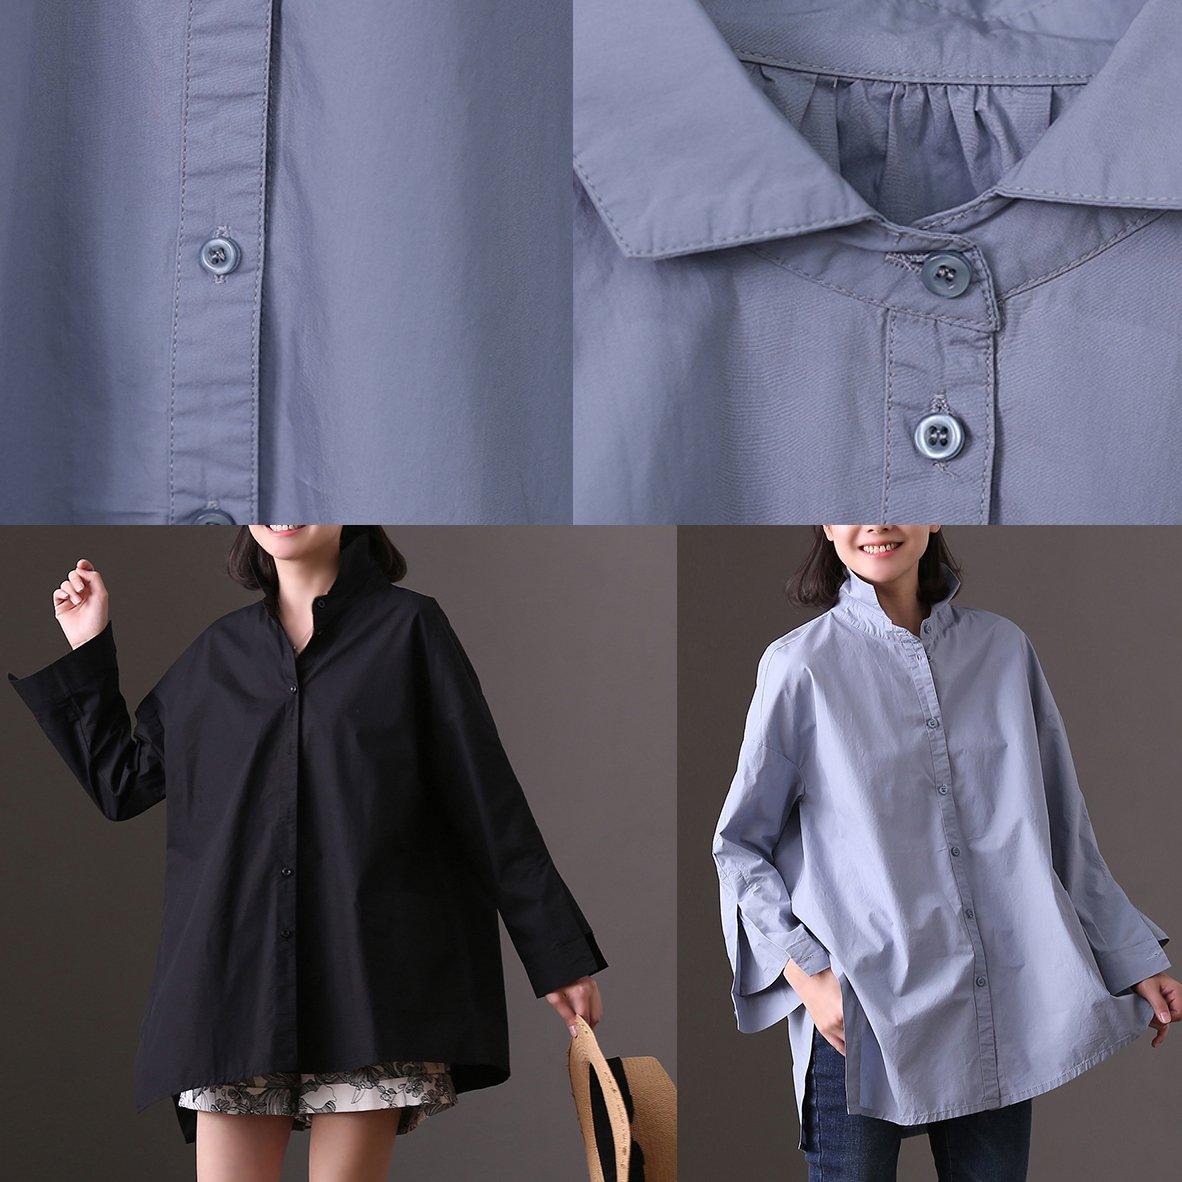 fashion black cotton shift dress plus size cotton maxi dress boutique side open asymmetric pockets natural cotton dress - Omychic